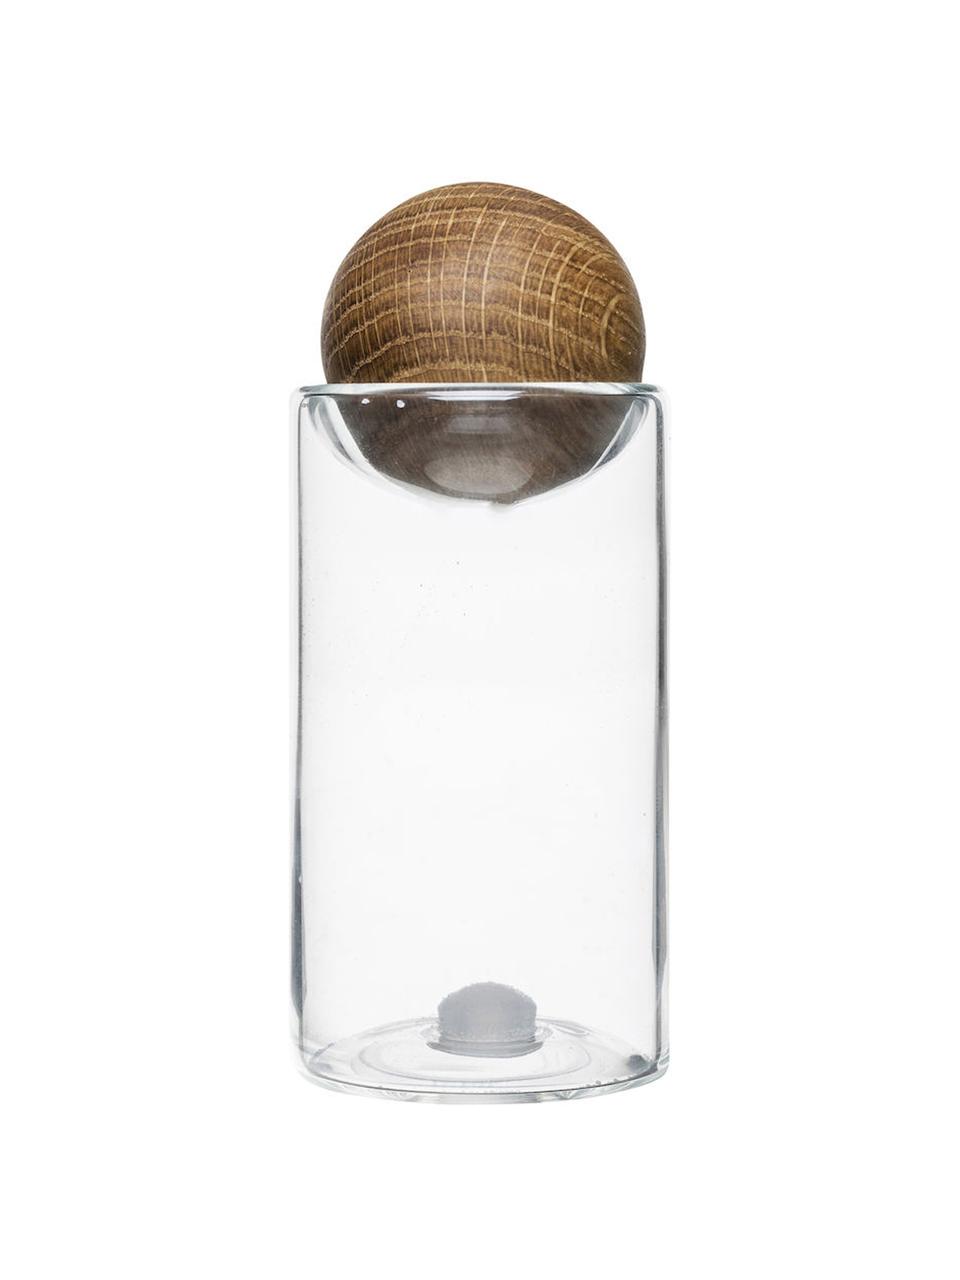 Zout- en peperstrooier Eden met deksel van eikenhout, 2-delig, Houder: mondgeblazen glas, Sluiting: eikenhout, Transparent, eikenhoutkleurig, Ø 5 x H 12 cm